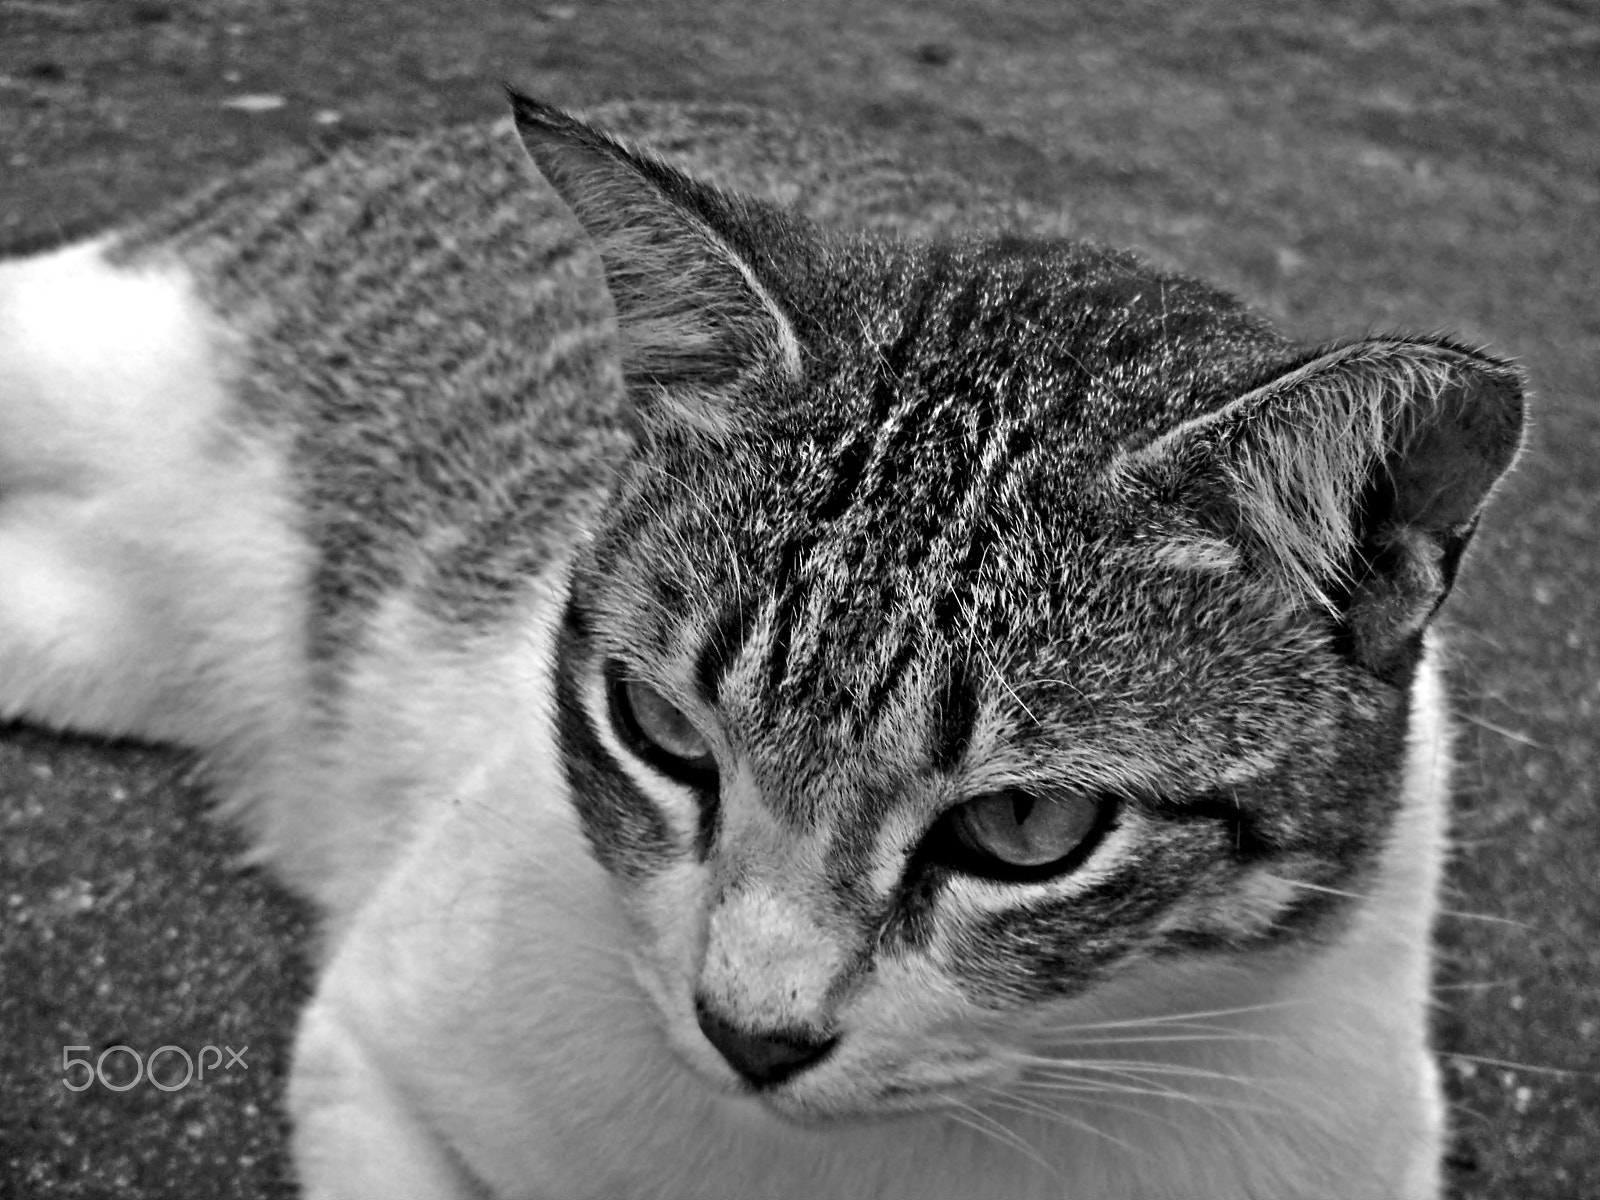 Nikon Coolpix S1200pj sample photo. City cat portrait series photography